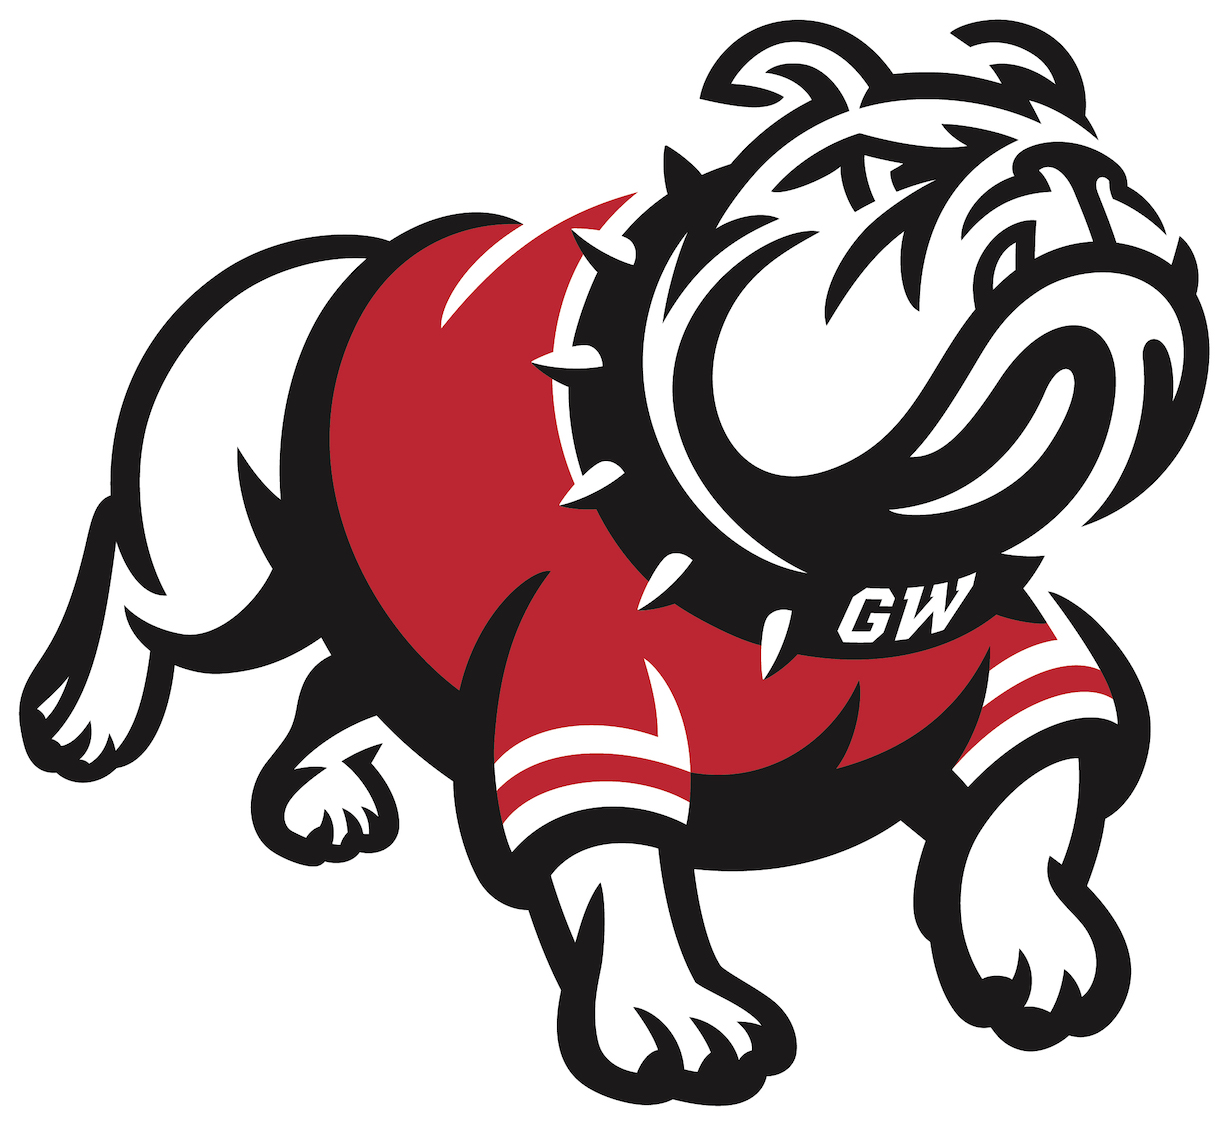 GWU Launches New Runnin' Bulldog Logo | Gardner-Webb University